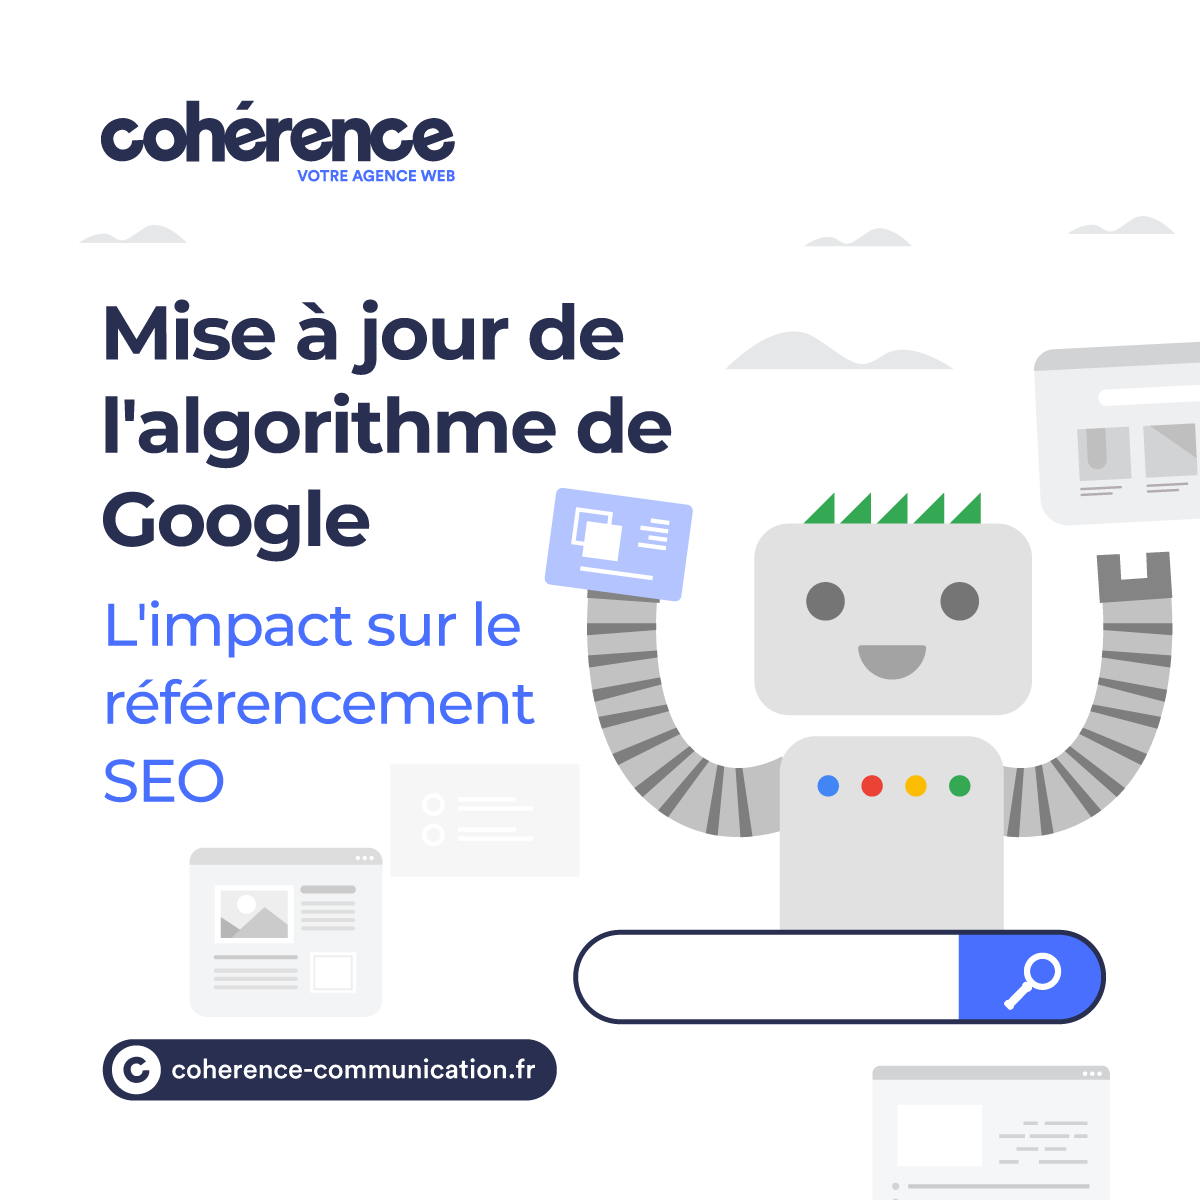 Coherence Agence Digitale Referencement SEO Mise A Jour De Lalgorithme De Google